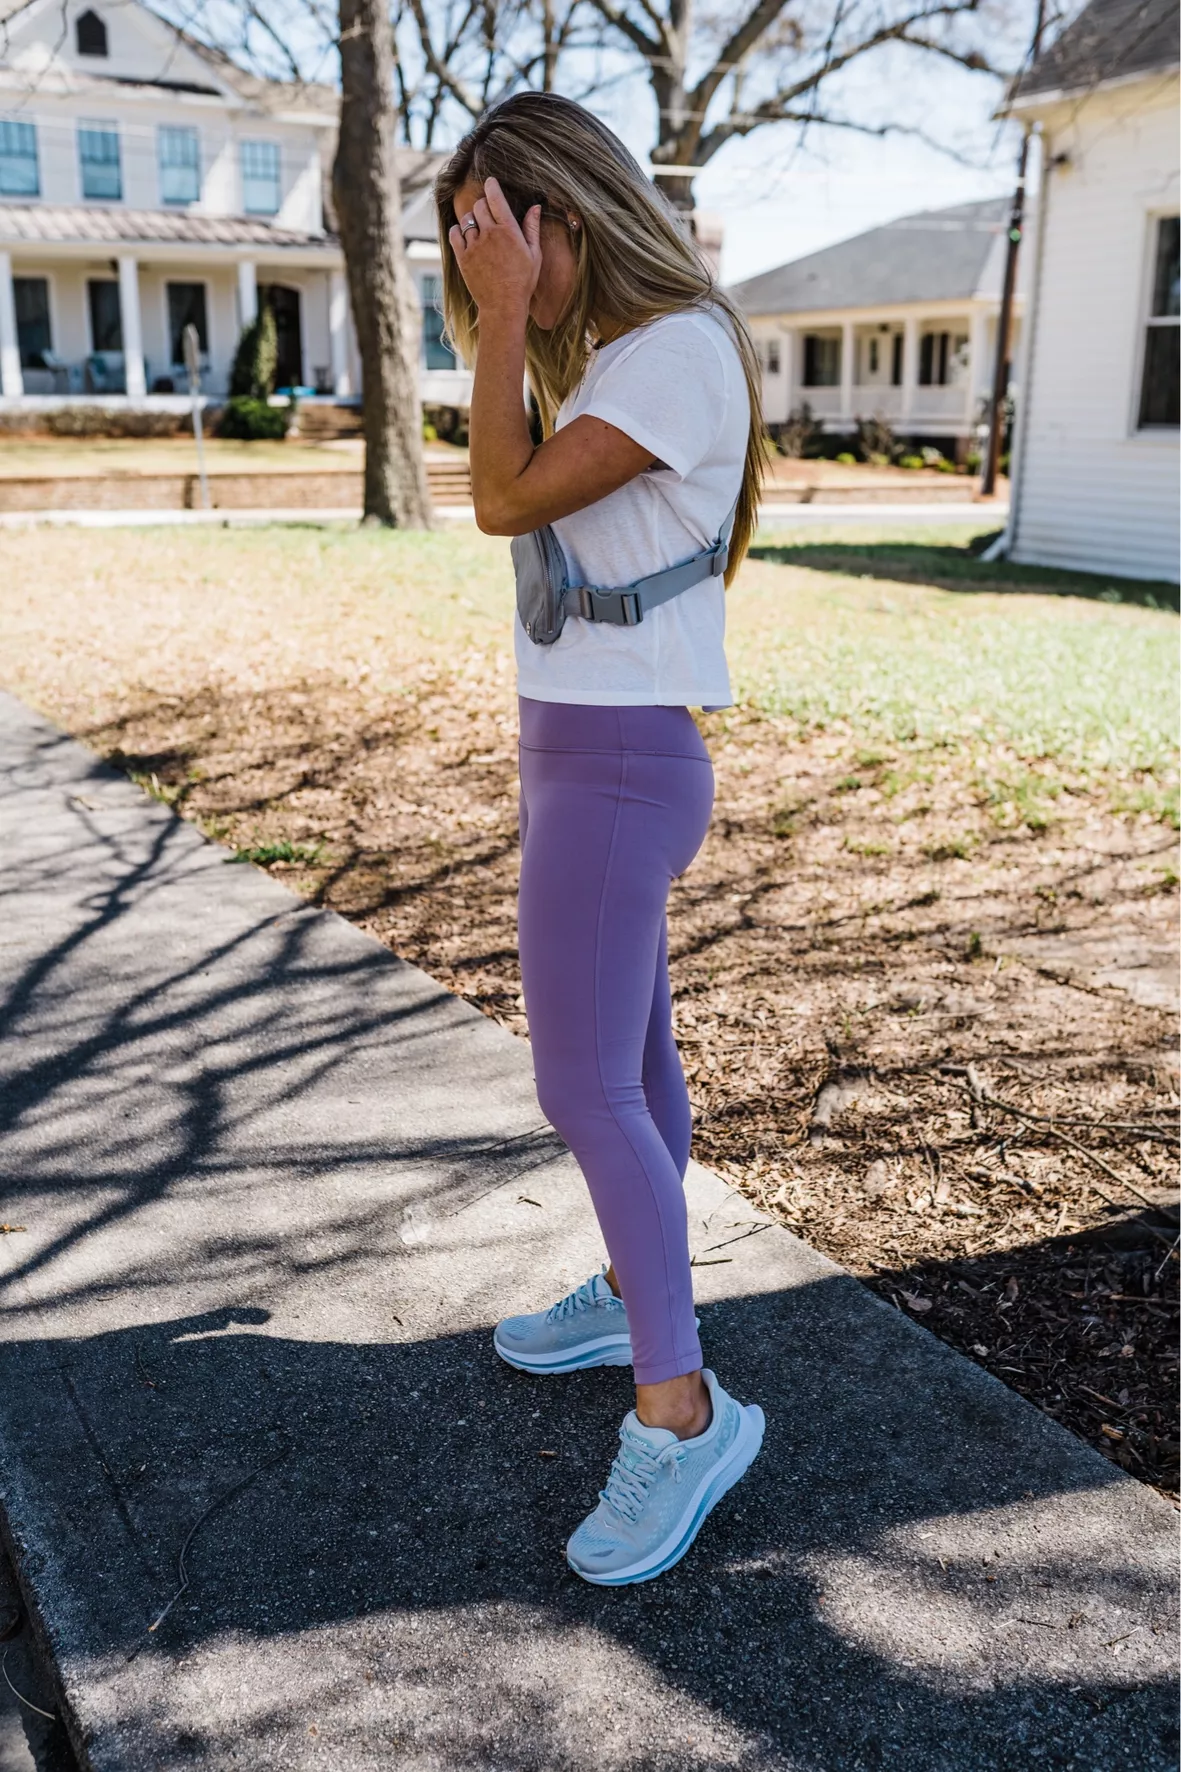 Lululemon leggings high waisted purple color